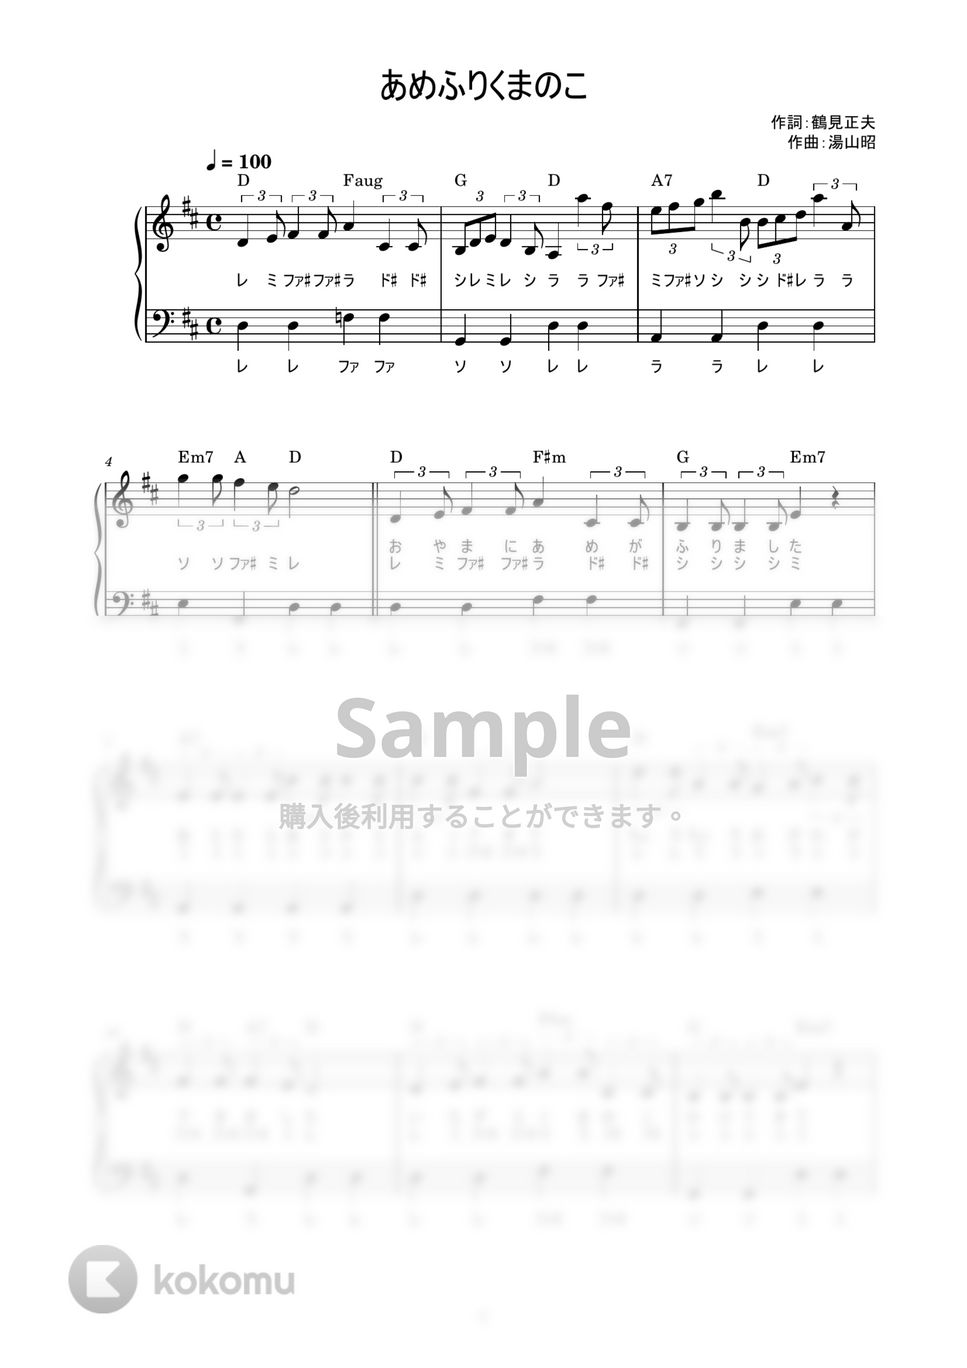 湯山昭 - あめふりくまのこ (かんたん / 歌詞付き / ドレミ付き / 初心者) by piano.tokyo